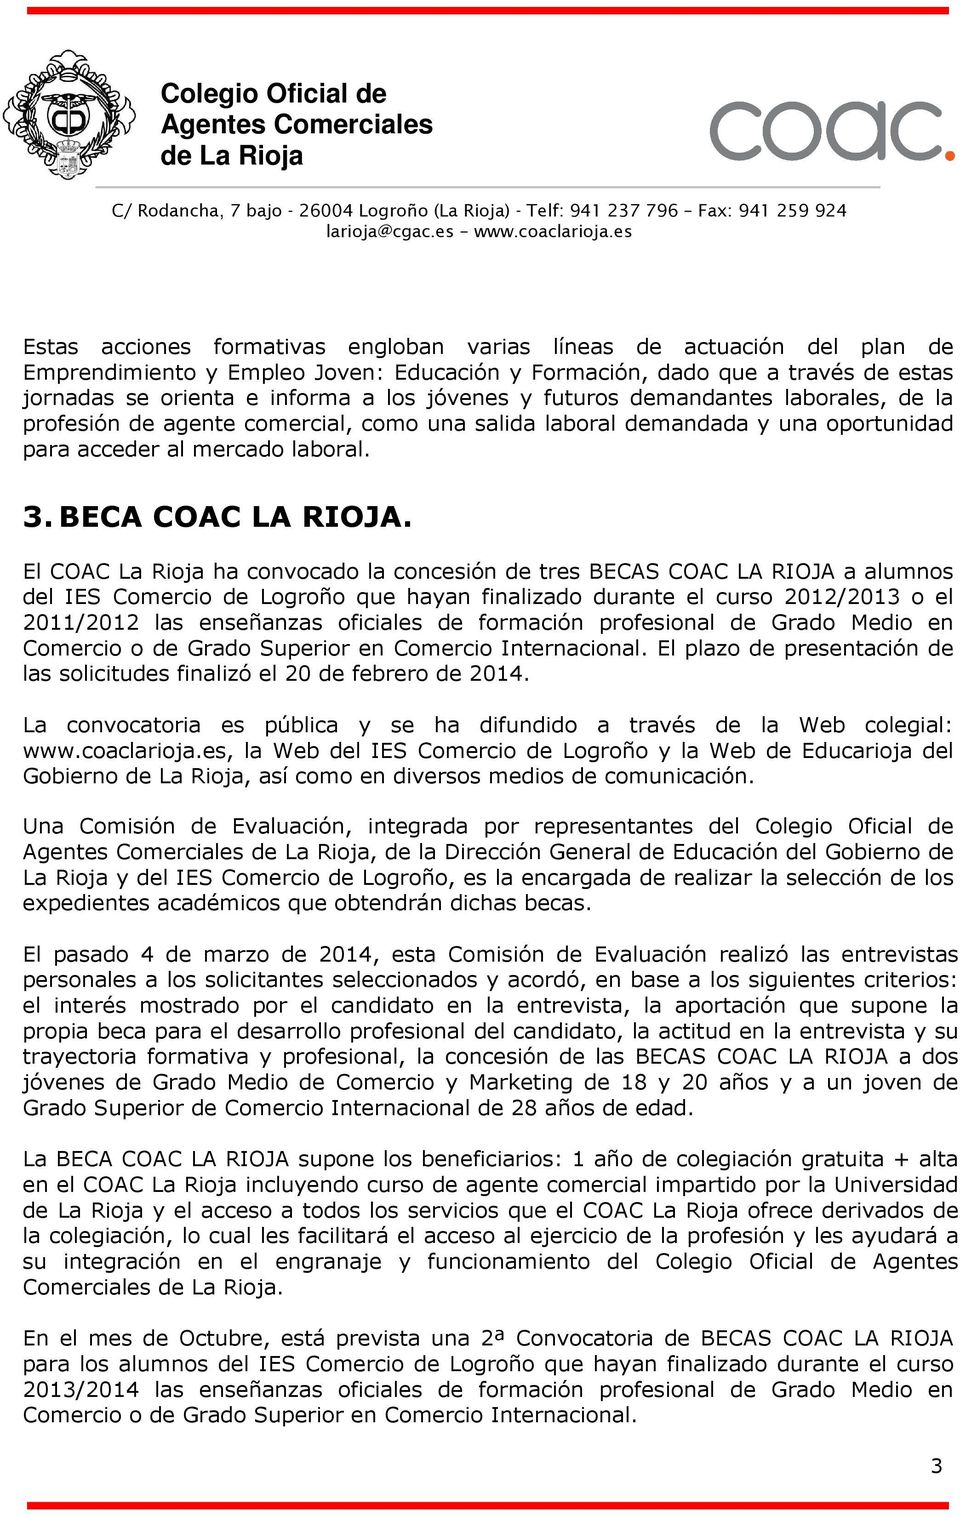 El COAC La Rioja ha convocado la concesión de tres BECAS COAC LA RIOJA a alumnos del IES Comercio de Logroño que hayan finalizado durante el curso 2012/2013 o el 2011/2012 las enseñanzas oficiales de